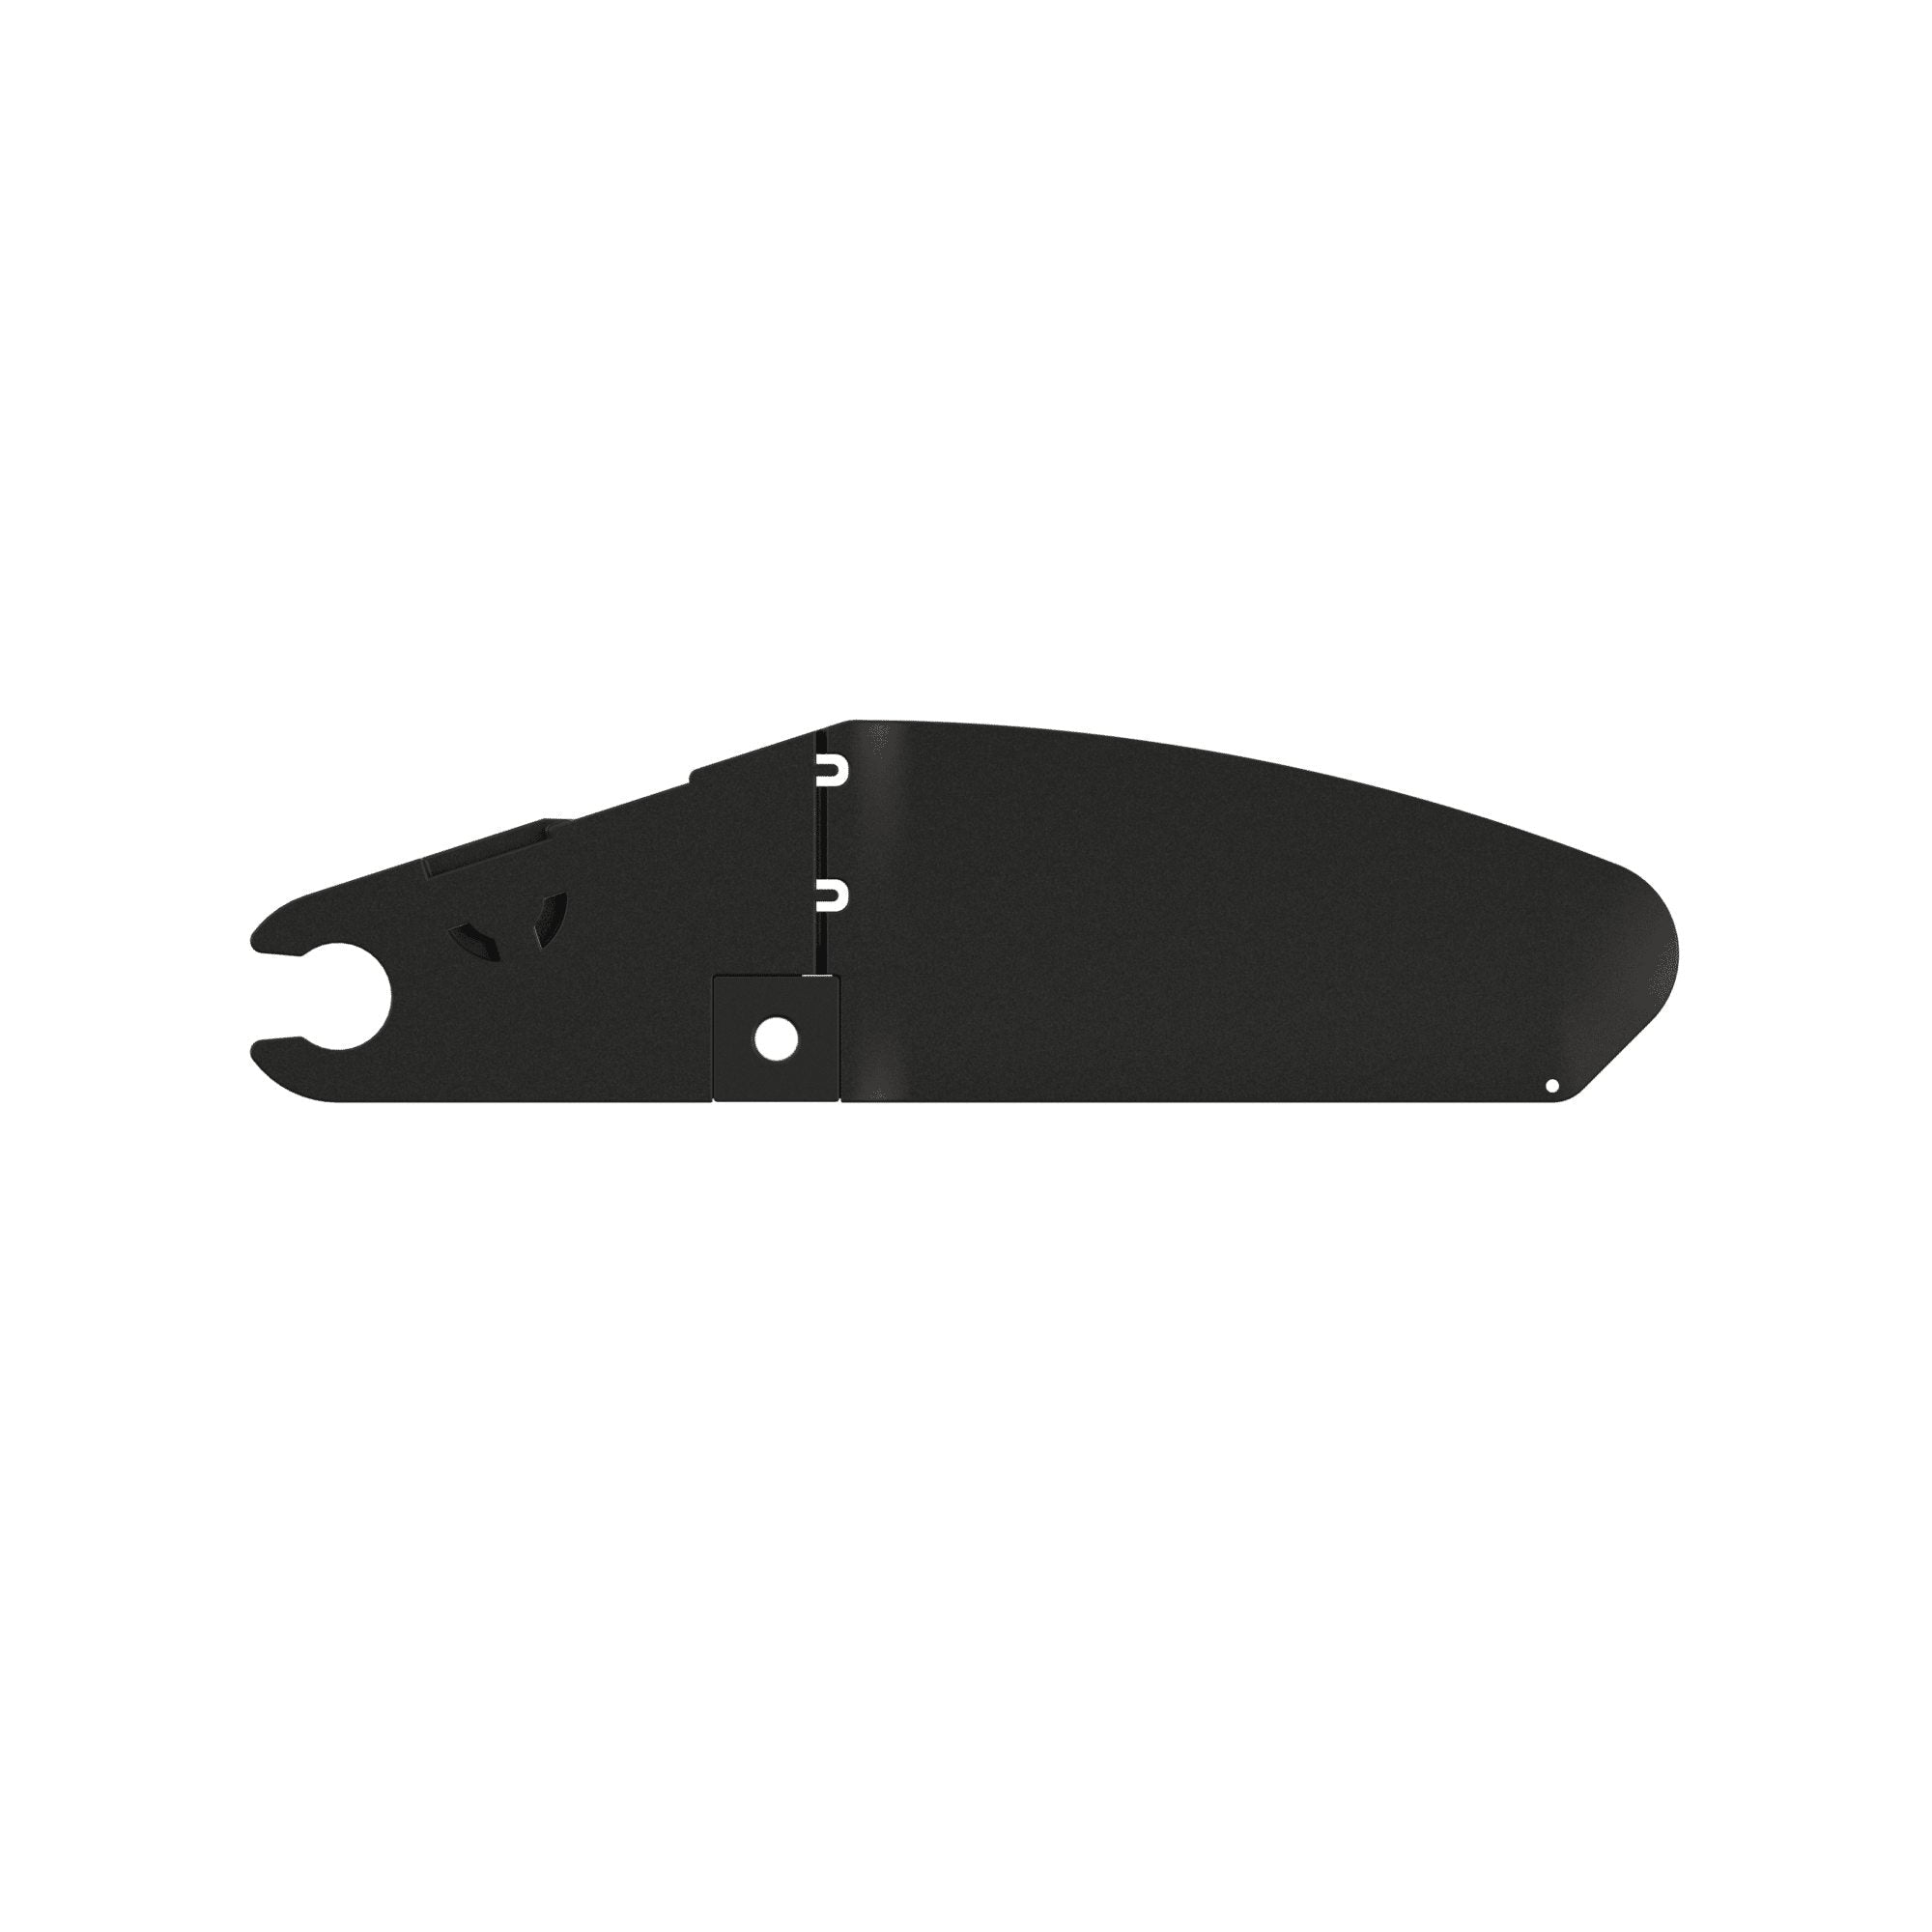 Kajaksport Skeg Replacement Blade for System 4